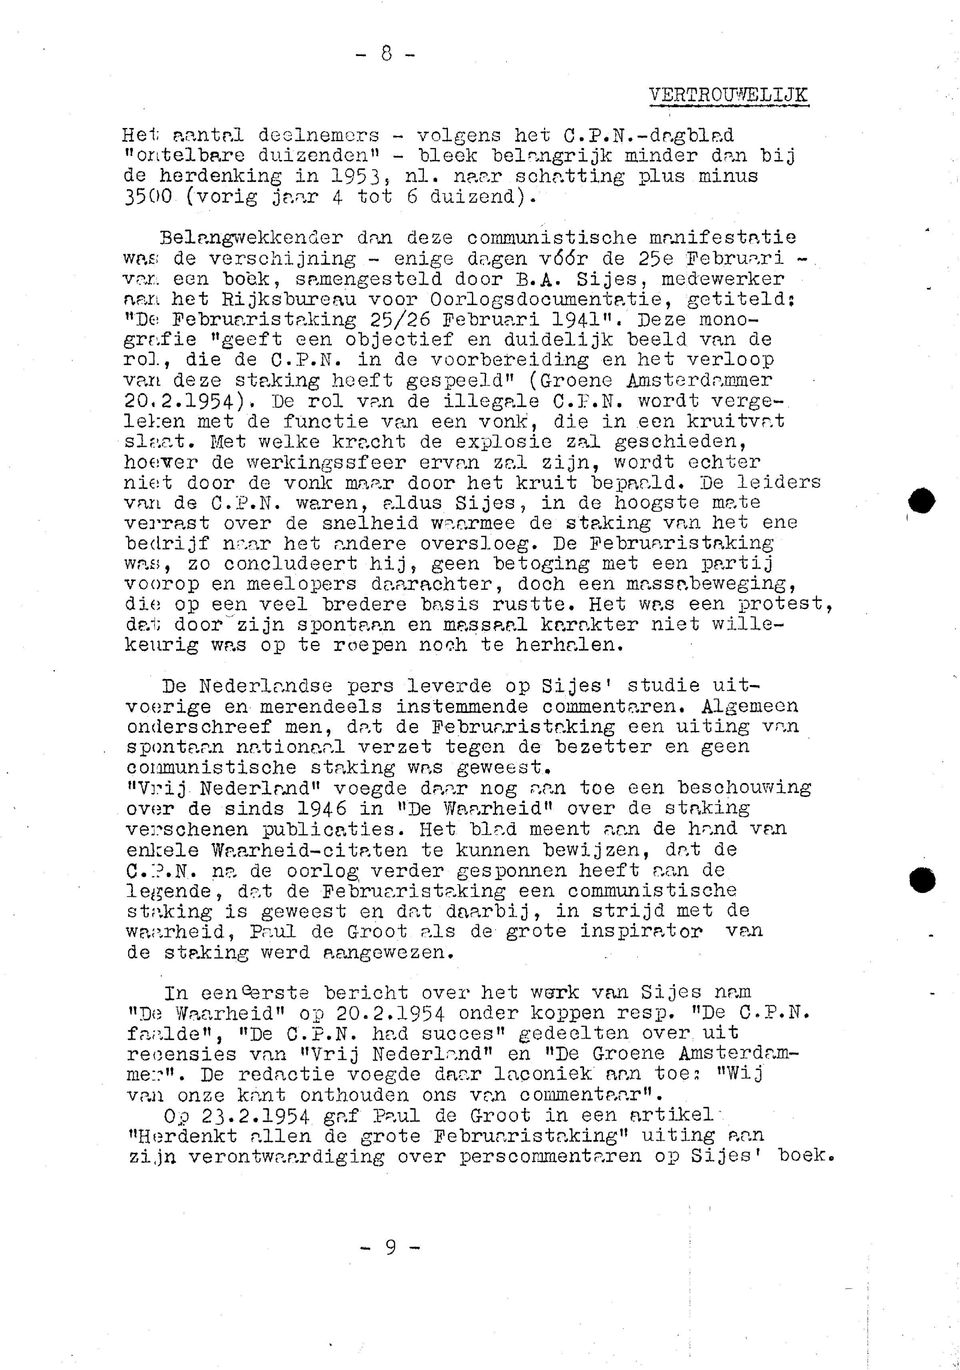 Sjes, medewerker aan het Rjksbureau voor Oorlogsdocumentate, getteld; "De Februarstakng 25/26 Februar 1941". Deze monografe "geeft een objectef en dudeljk beeld van de rol, de de C.P.